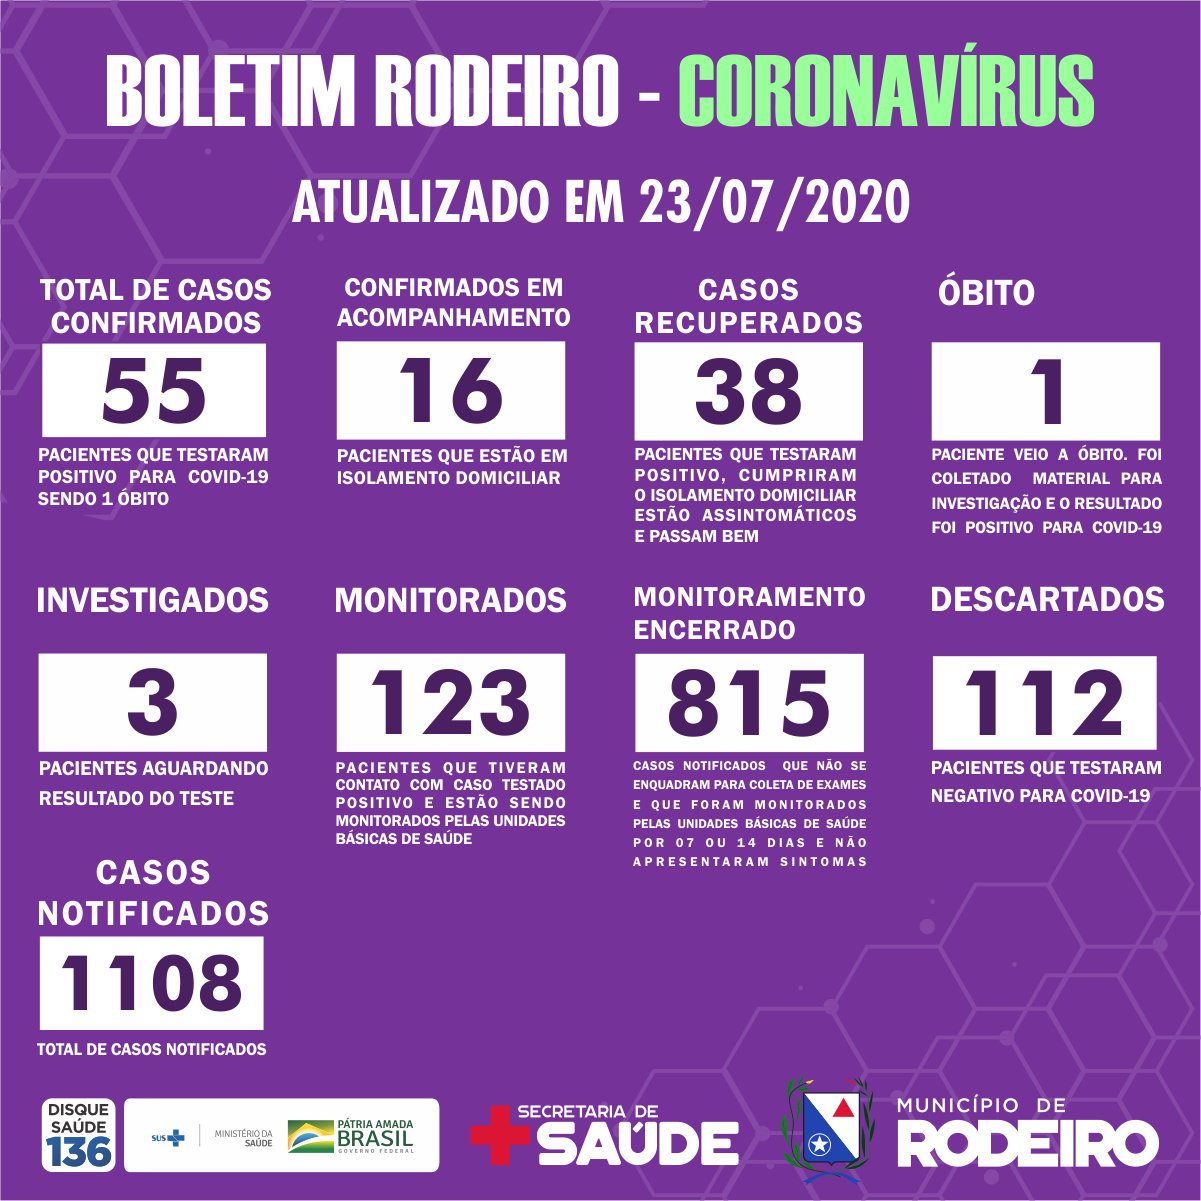 Boletim epidemiológico do Município de Rodeiro coronavírus, atualizado em 23/07/2020